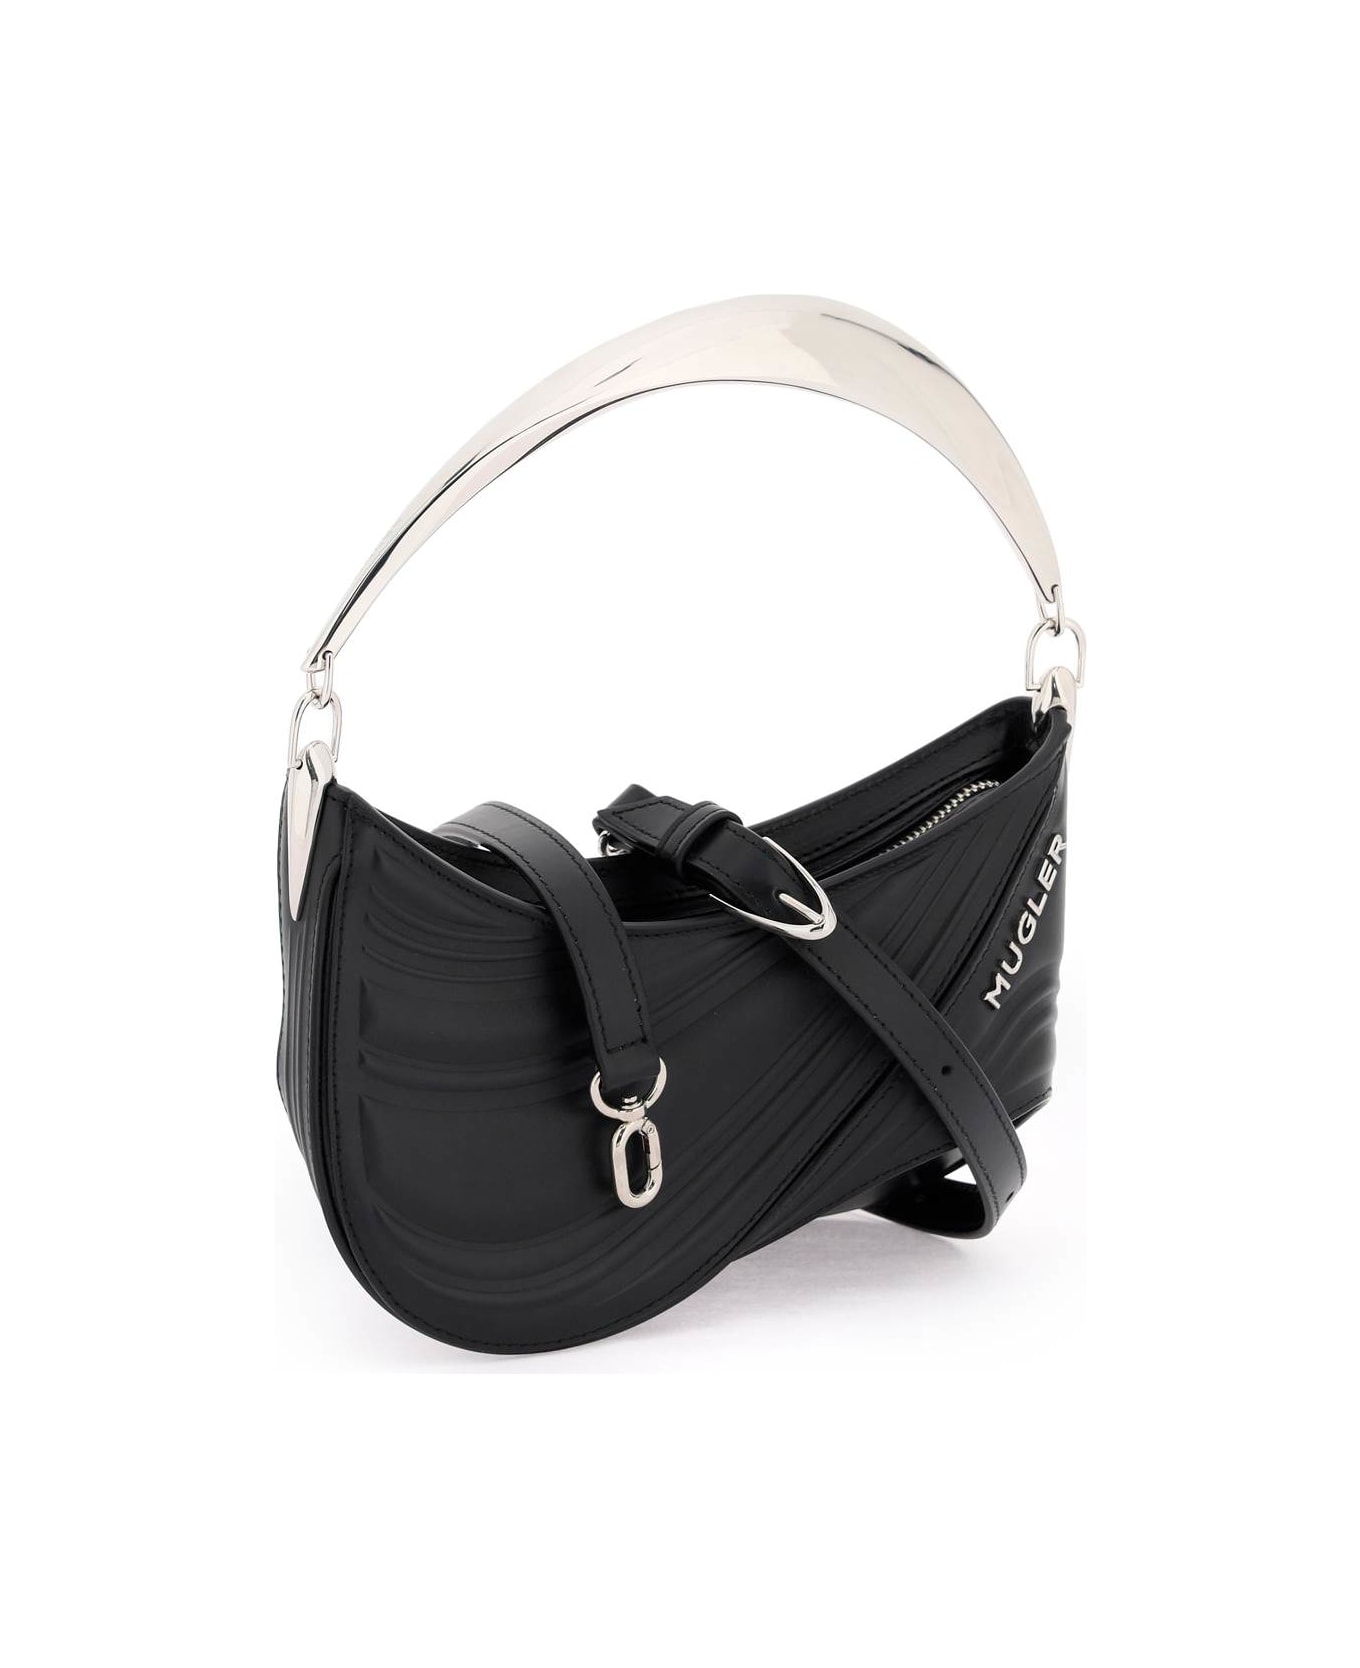 Mugler Spiral Curve 01 Handbag - BLACK (Black) トートバッグ